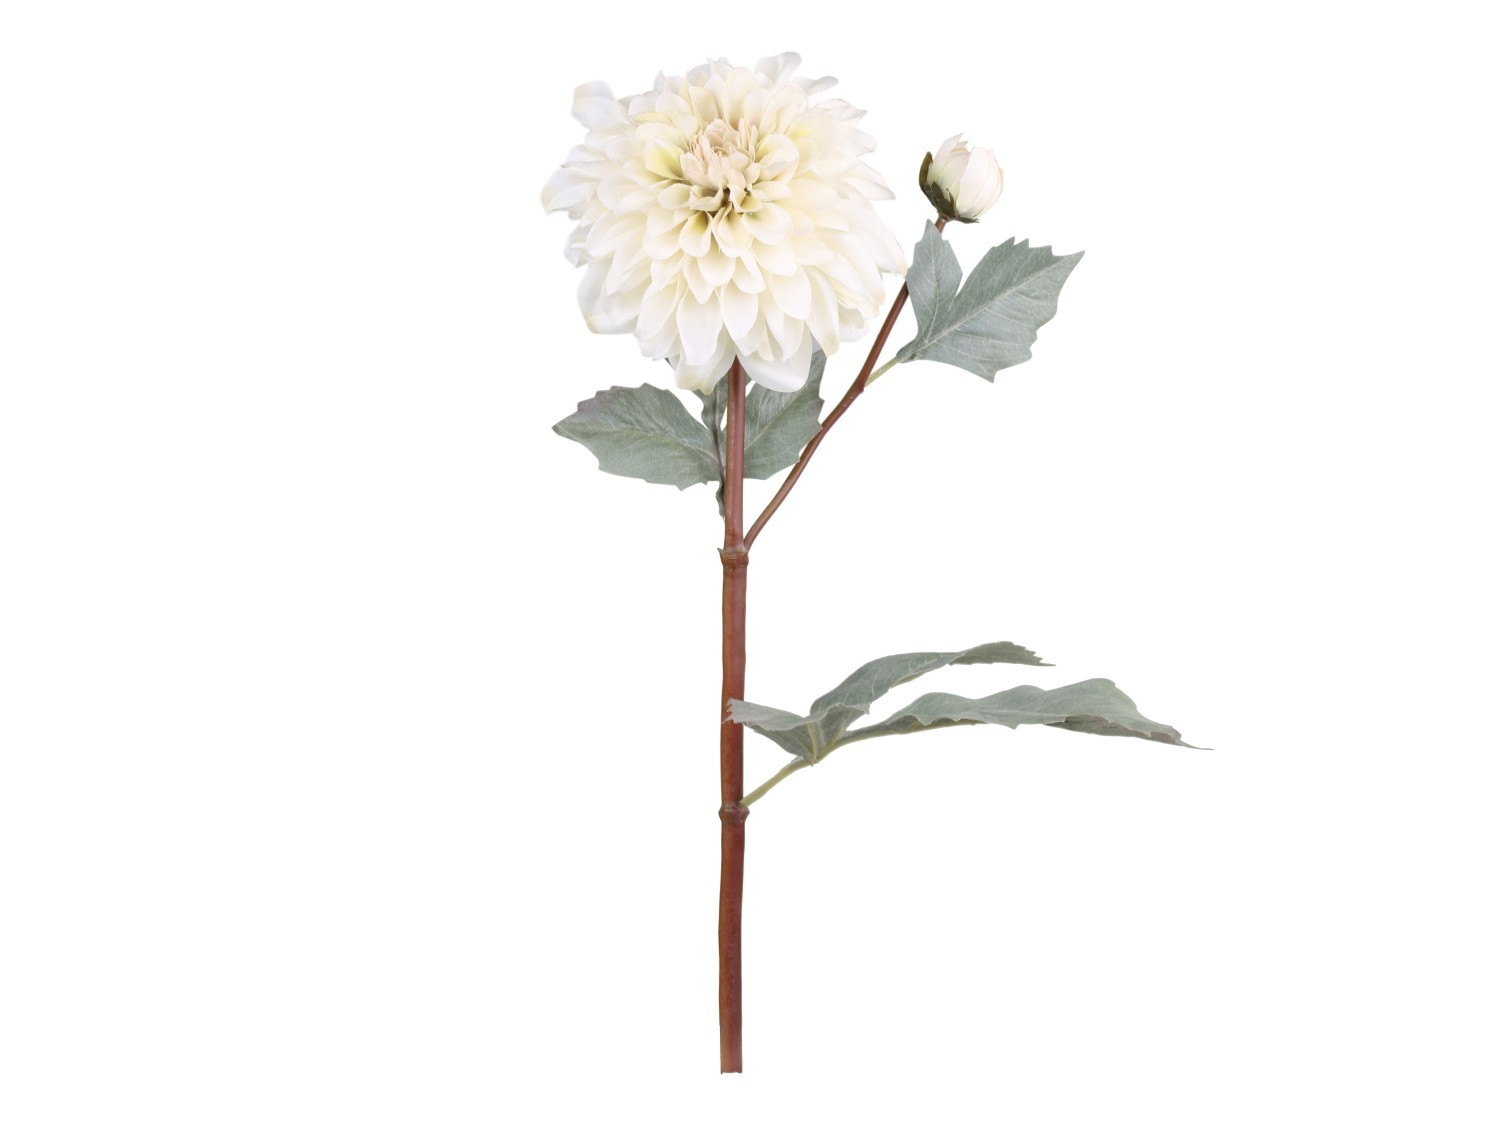 Dekorace umělá krémová květina Jiřina Dahlia cream - 48 cm Chic Antique